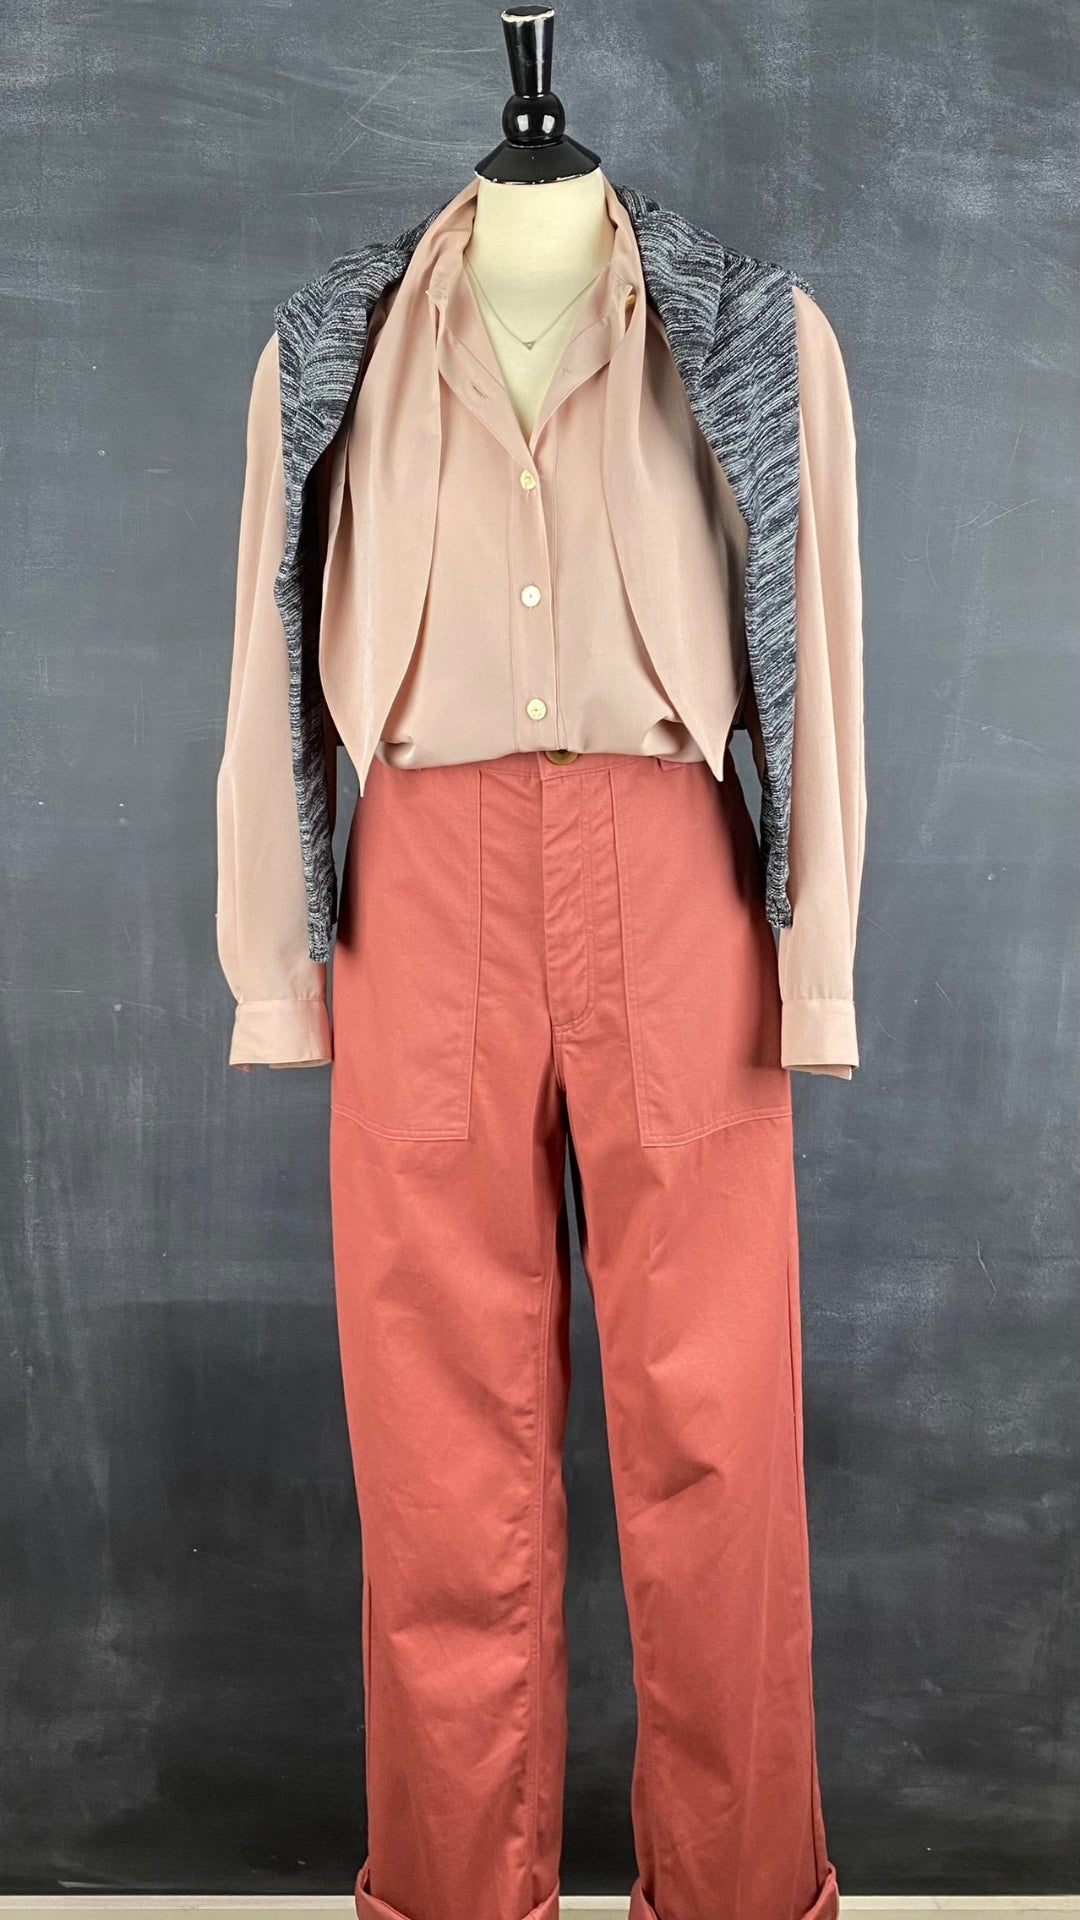 Pantalon en coton rose neuf Beaton, taille 14. Vue de l'agencement avec la blouse Aquascutum et le tricot Minimum.